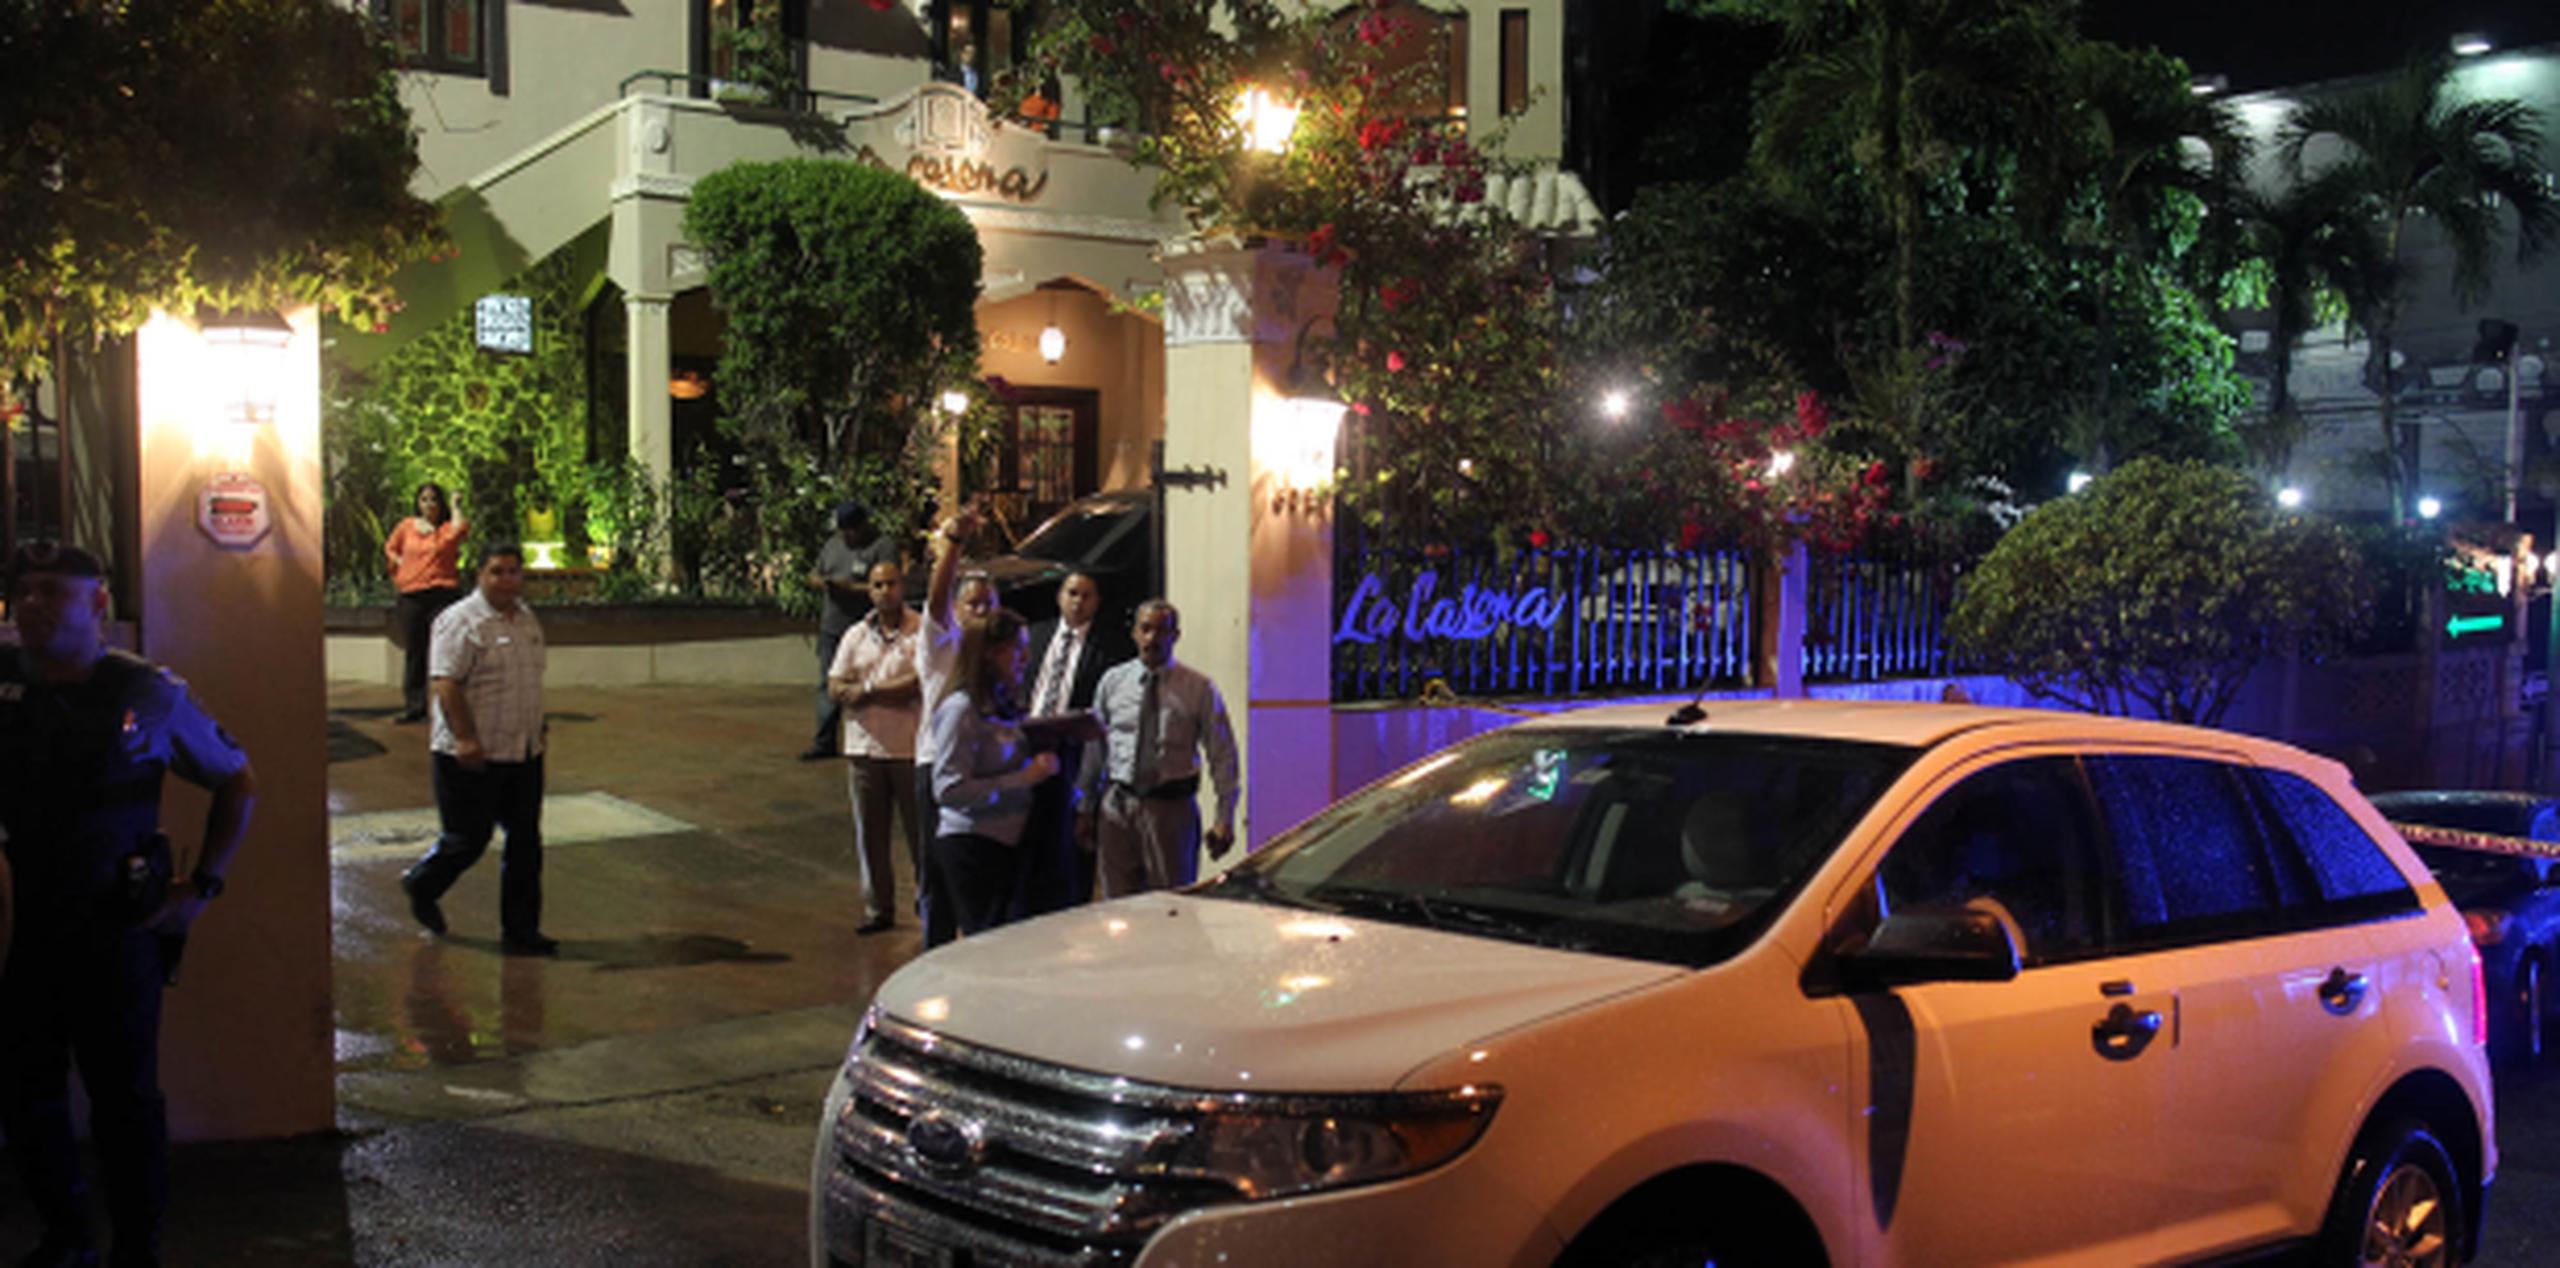 El restaurante, ubicado en Santurce, recibió varios impactos de bala. (Foto/ David Villafañe)